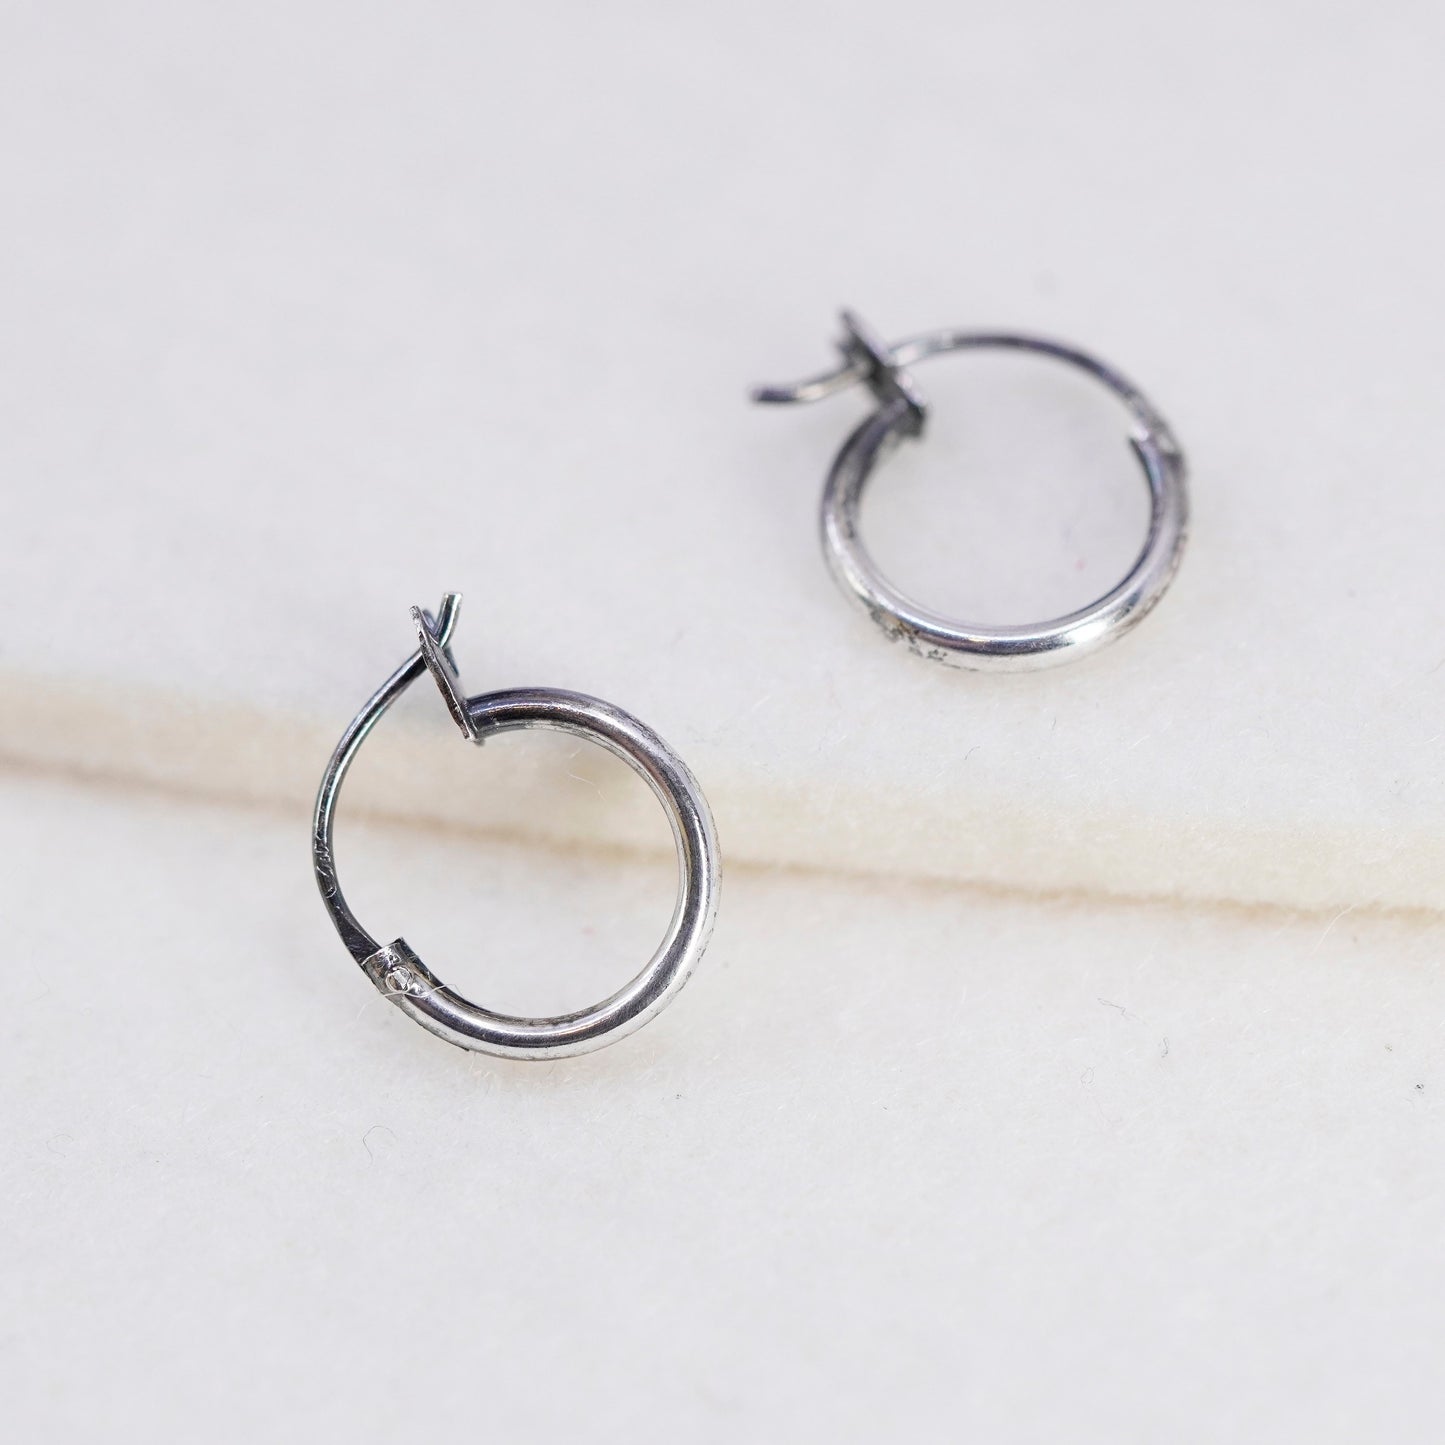 10mm, vintage Sterling silver handmade earrings, 925 hoops